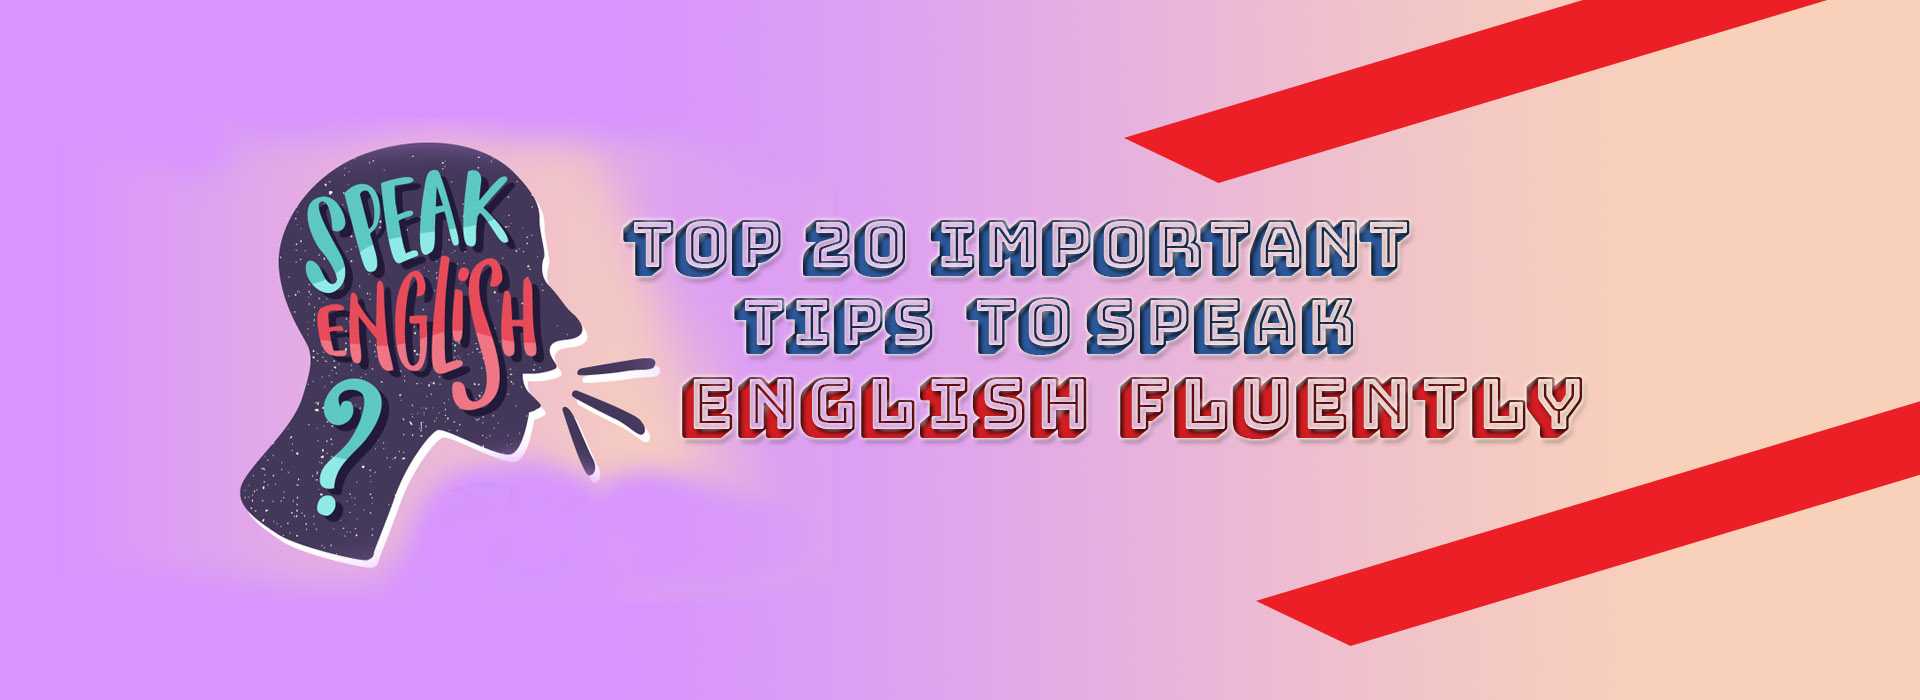 English speaking tips